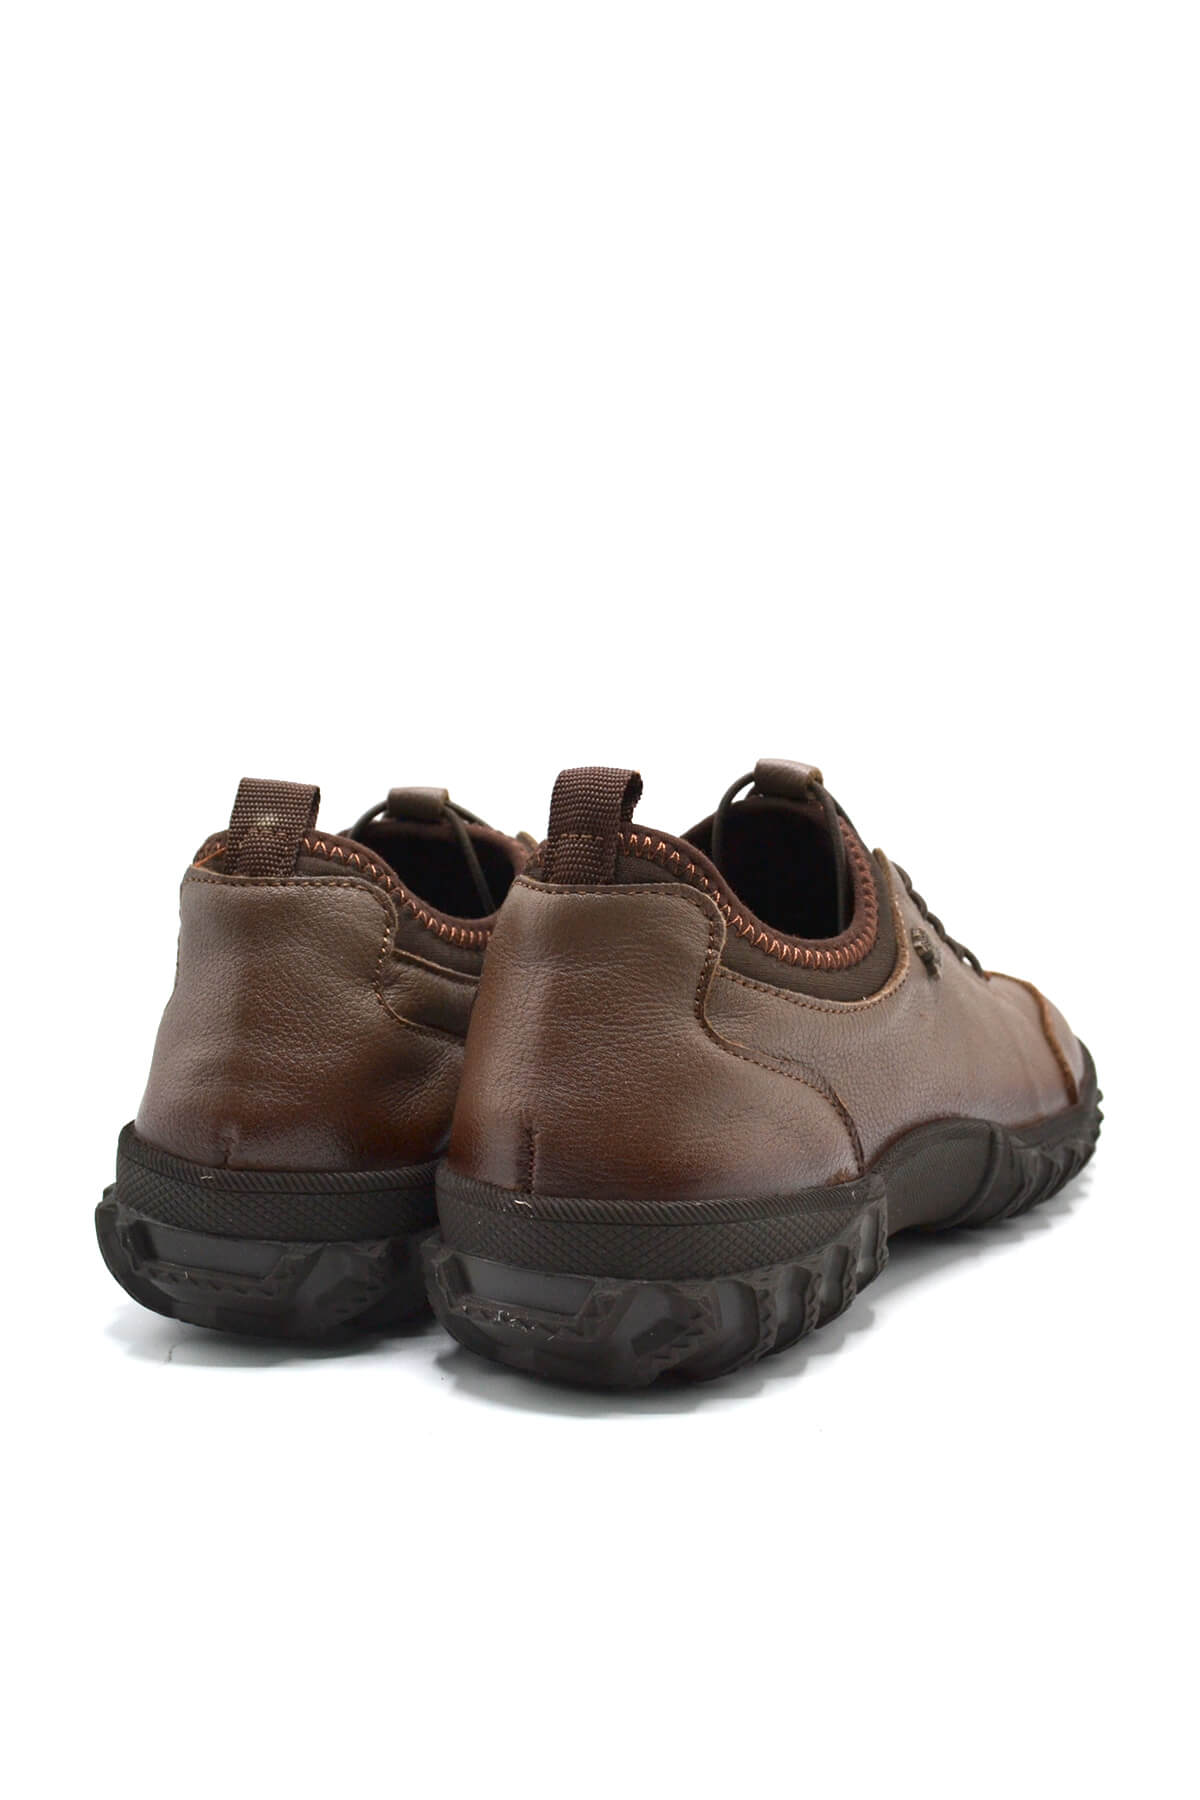 Kadın Comfort Deri Ayakkabı Vizon 2255201K